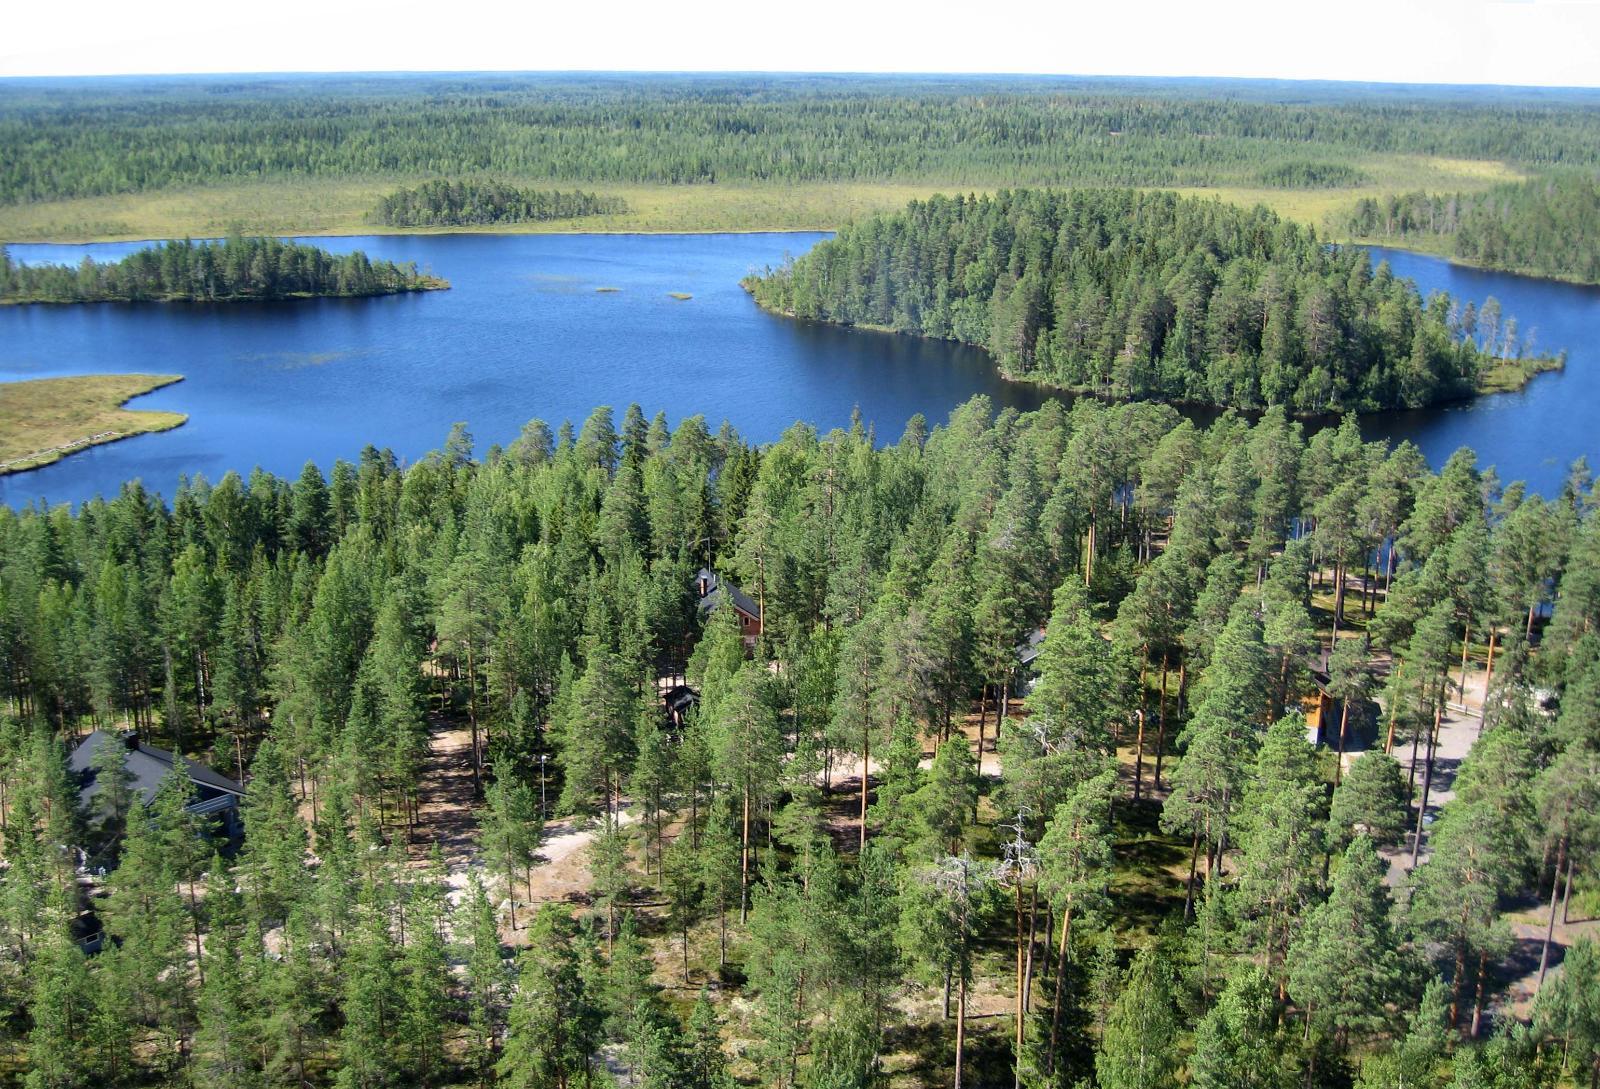 Metsät ja suot ympäröivät järveä, jossa on kaksi saarta. Puiden välistä erottuu mökkejä. Ilmakuva.